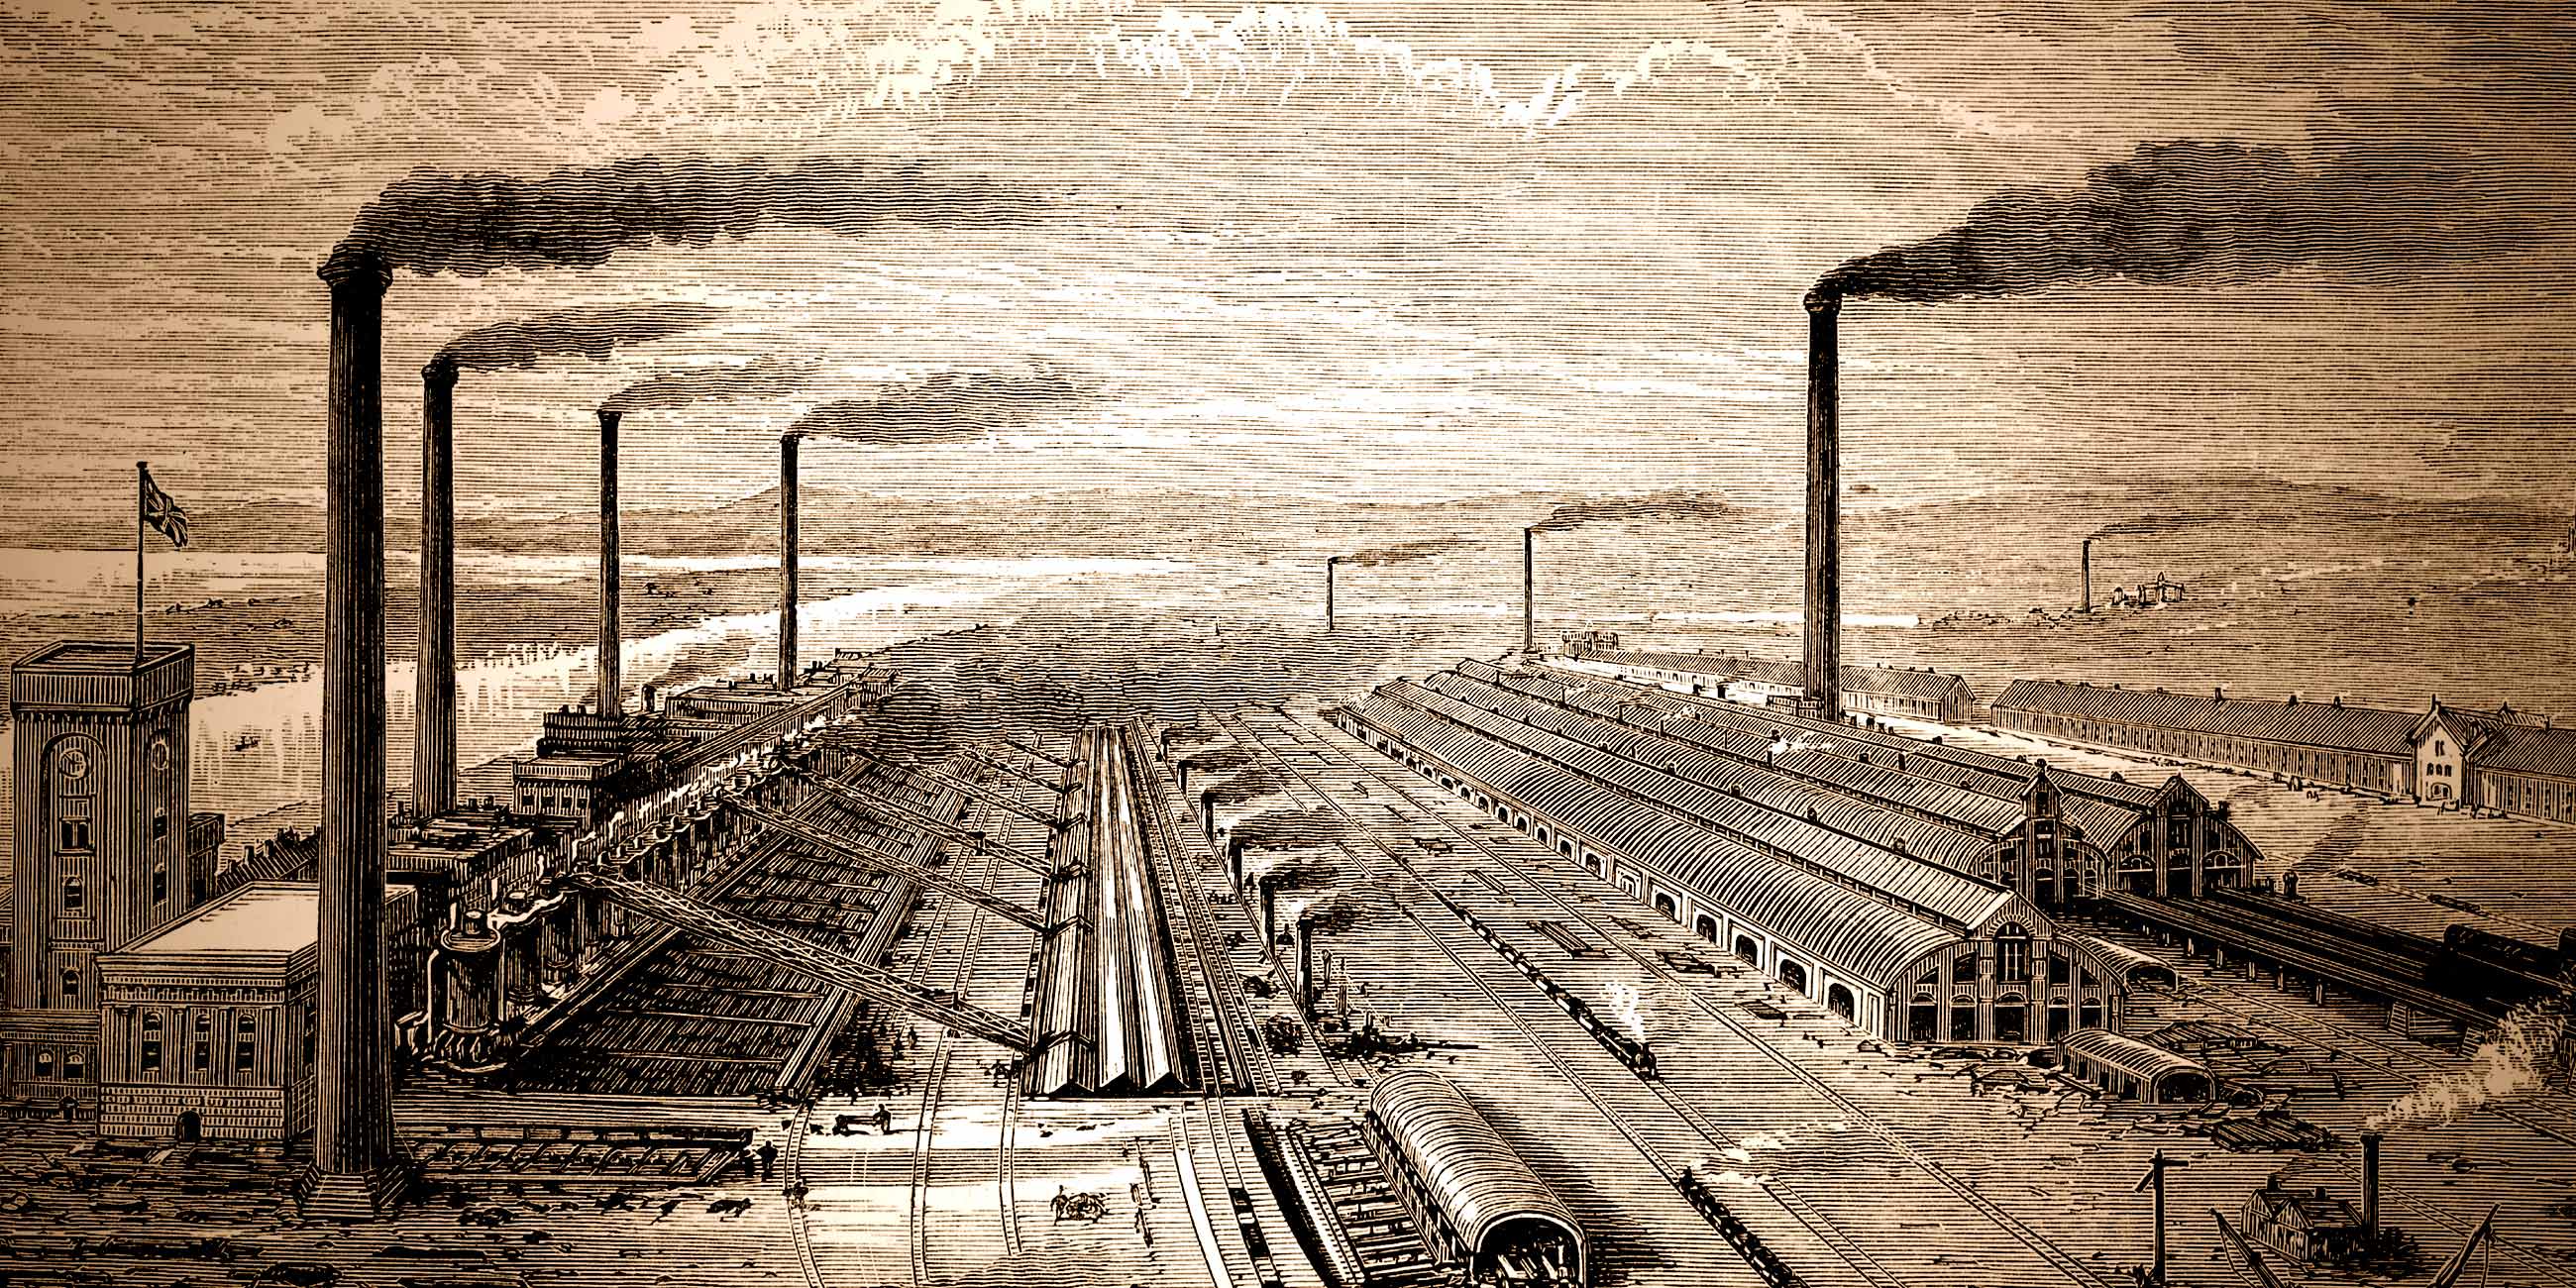 Industrial century. Промышленная Англия 19 век. Промышленная революция 19.век США. Сталелитейный завод Америка 19 век. Промышленная революция (1760-1840.